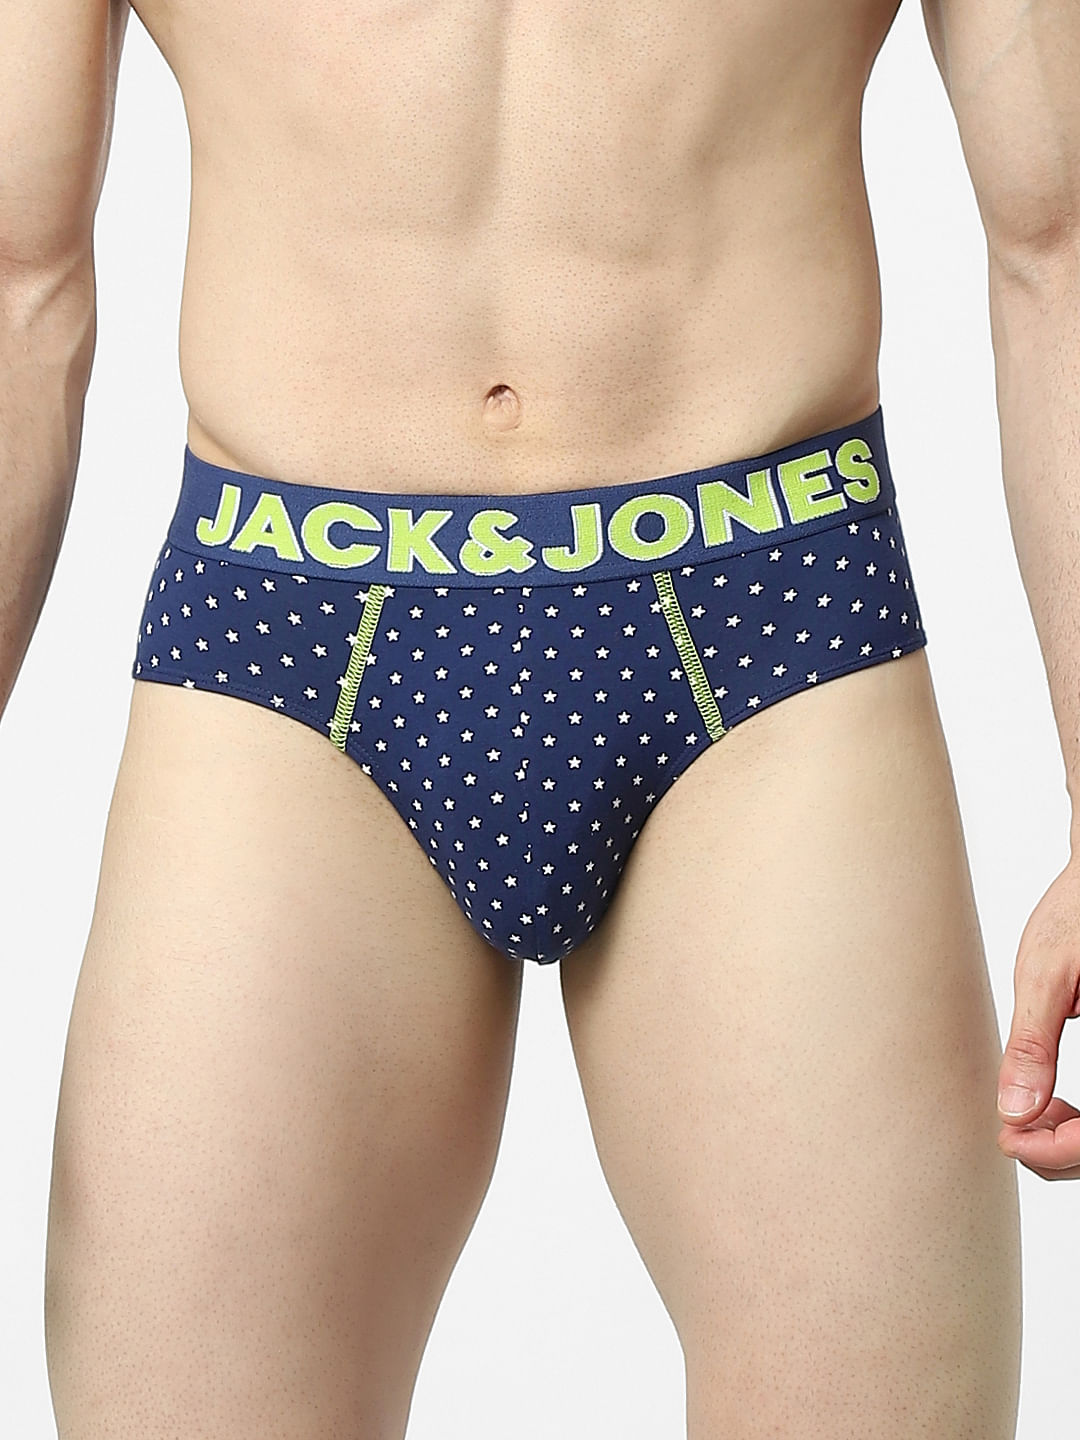 discount 76% Multicolored Single Jack & Jones Socks MEN FASHION Underwear & Nightwear 